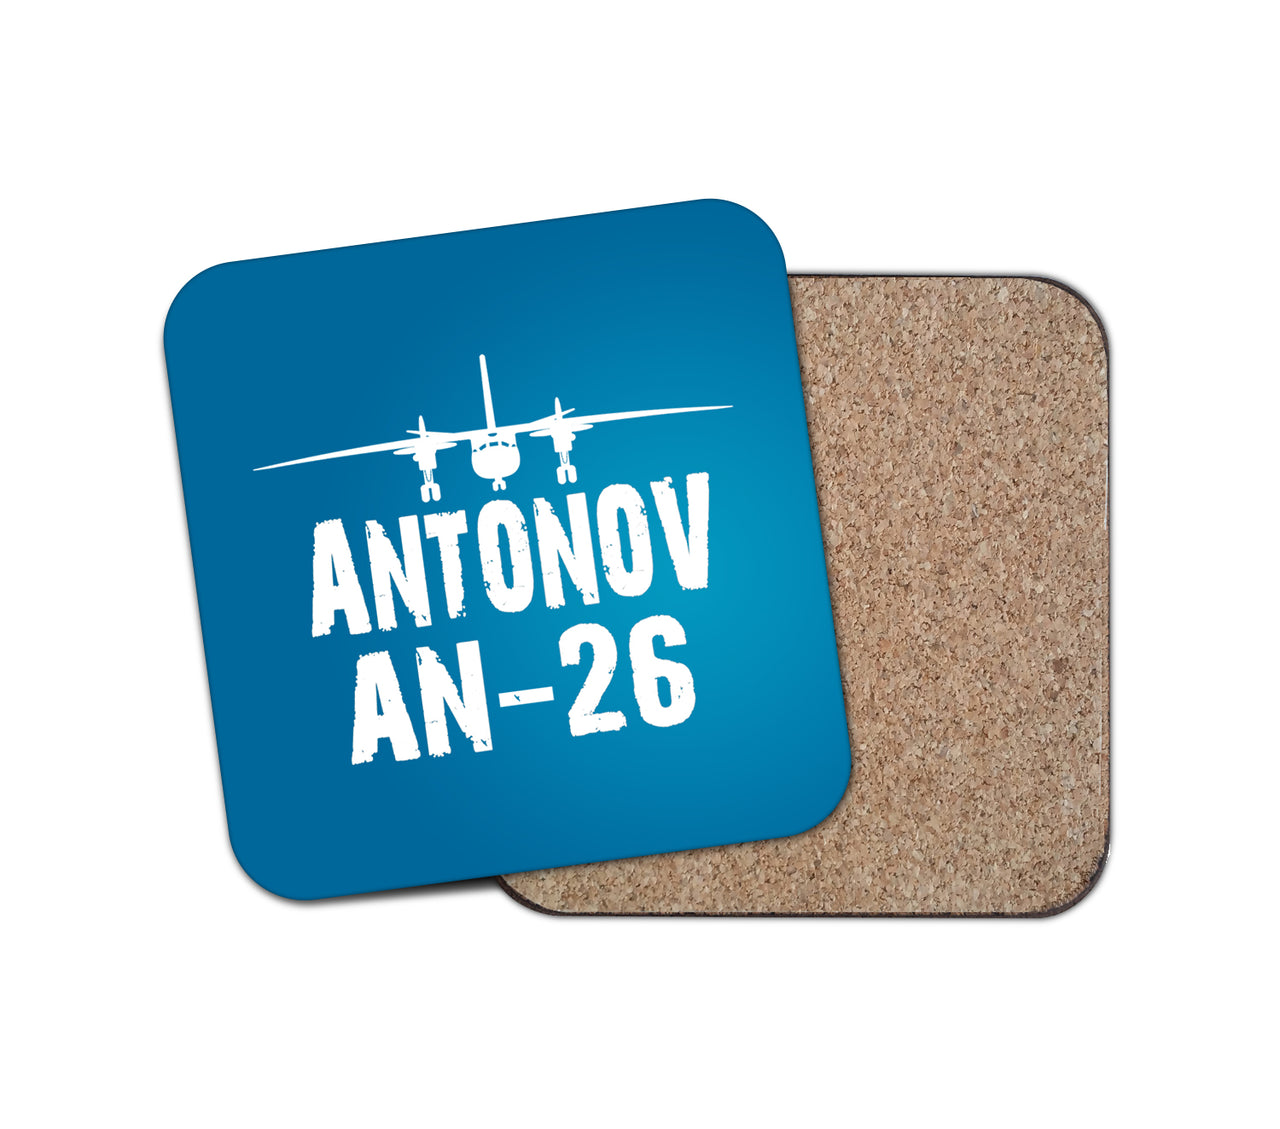 Antonov AN-26 & Plane Designed Coasters